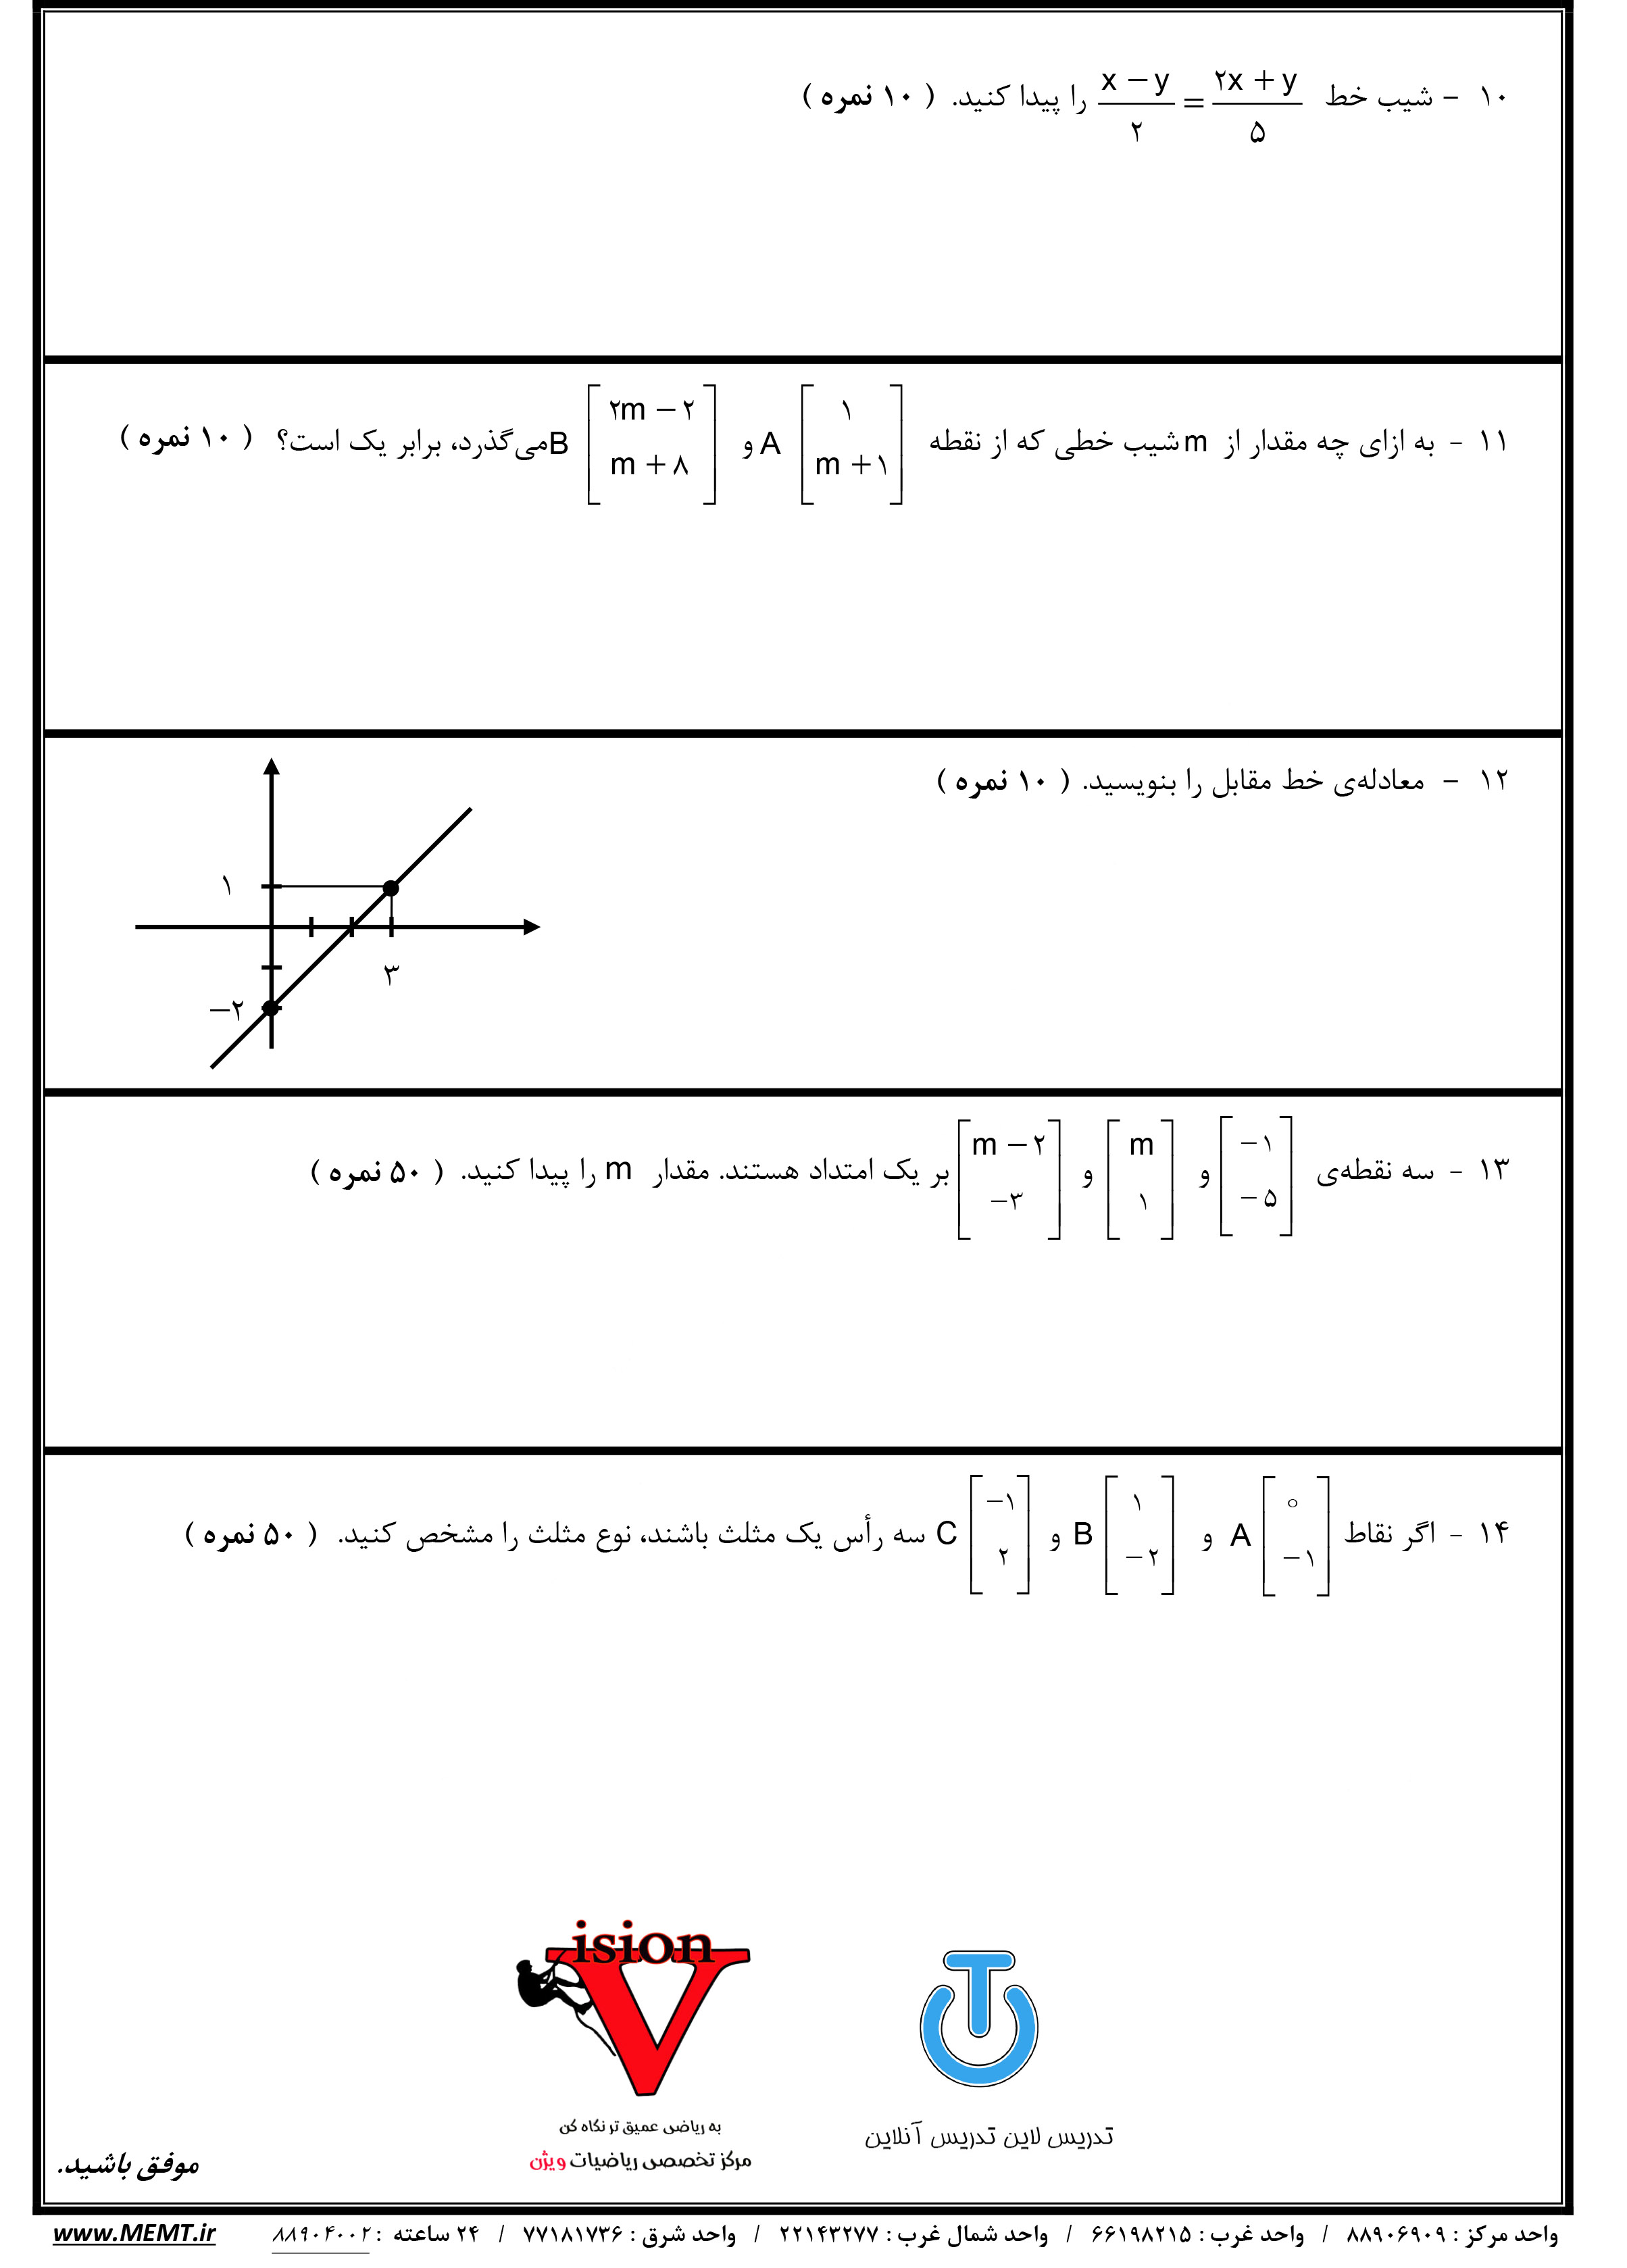 نمونه سوال ریاضی هشتم فصل 5 و 6 و 7 با جواب